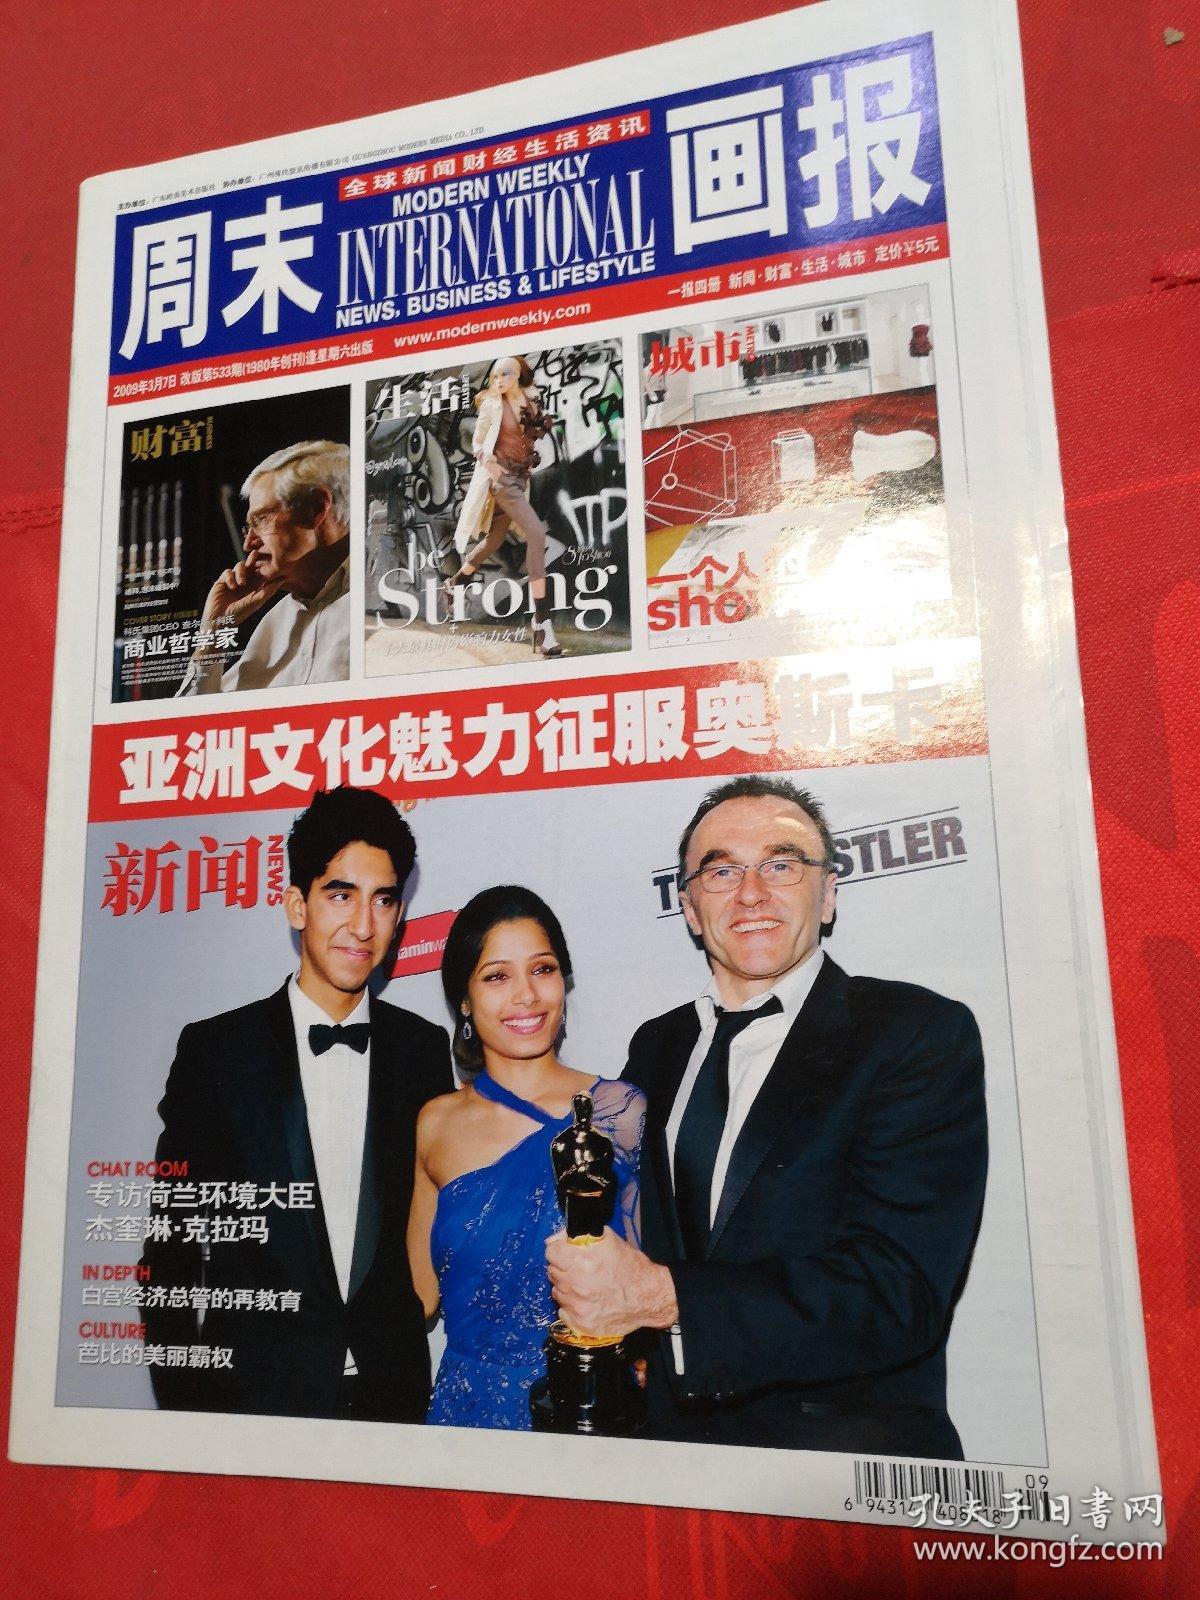 周末画报  2009-3-7第533期 全四册  全球新闻财经生活资讯  中国精英读品